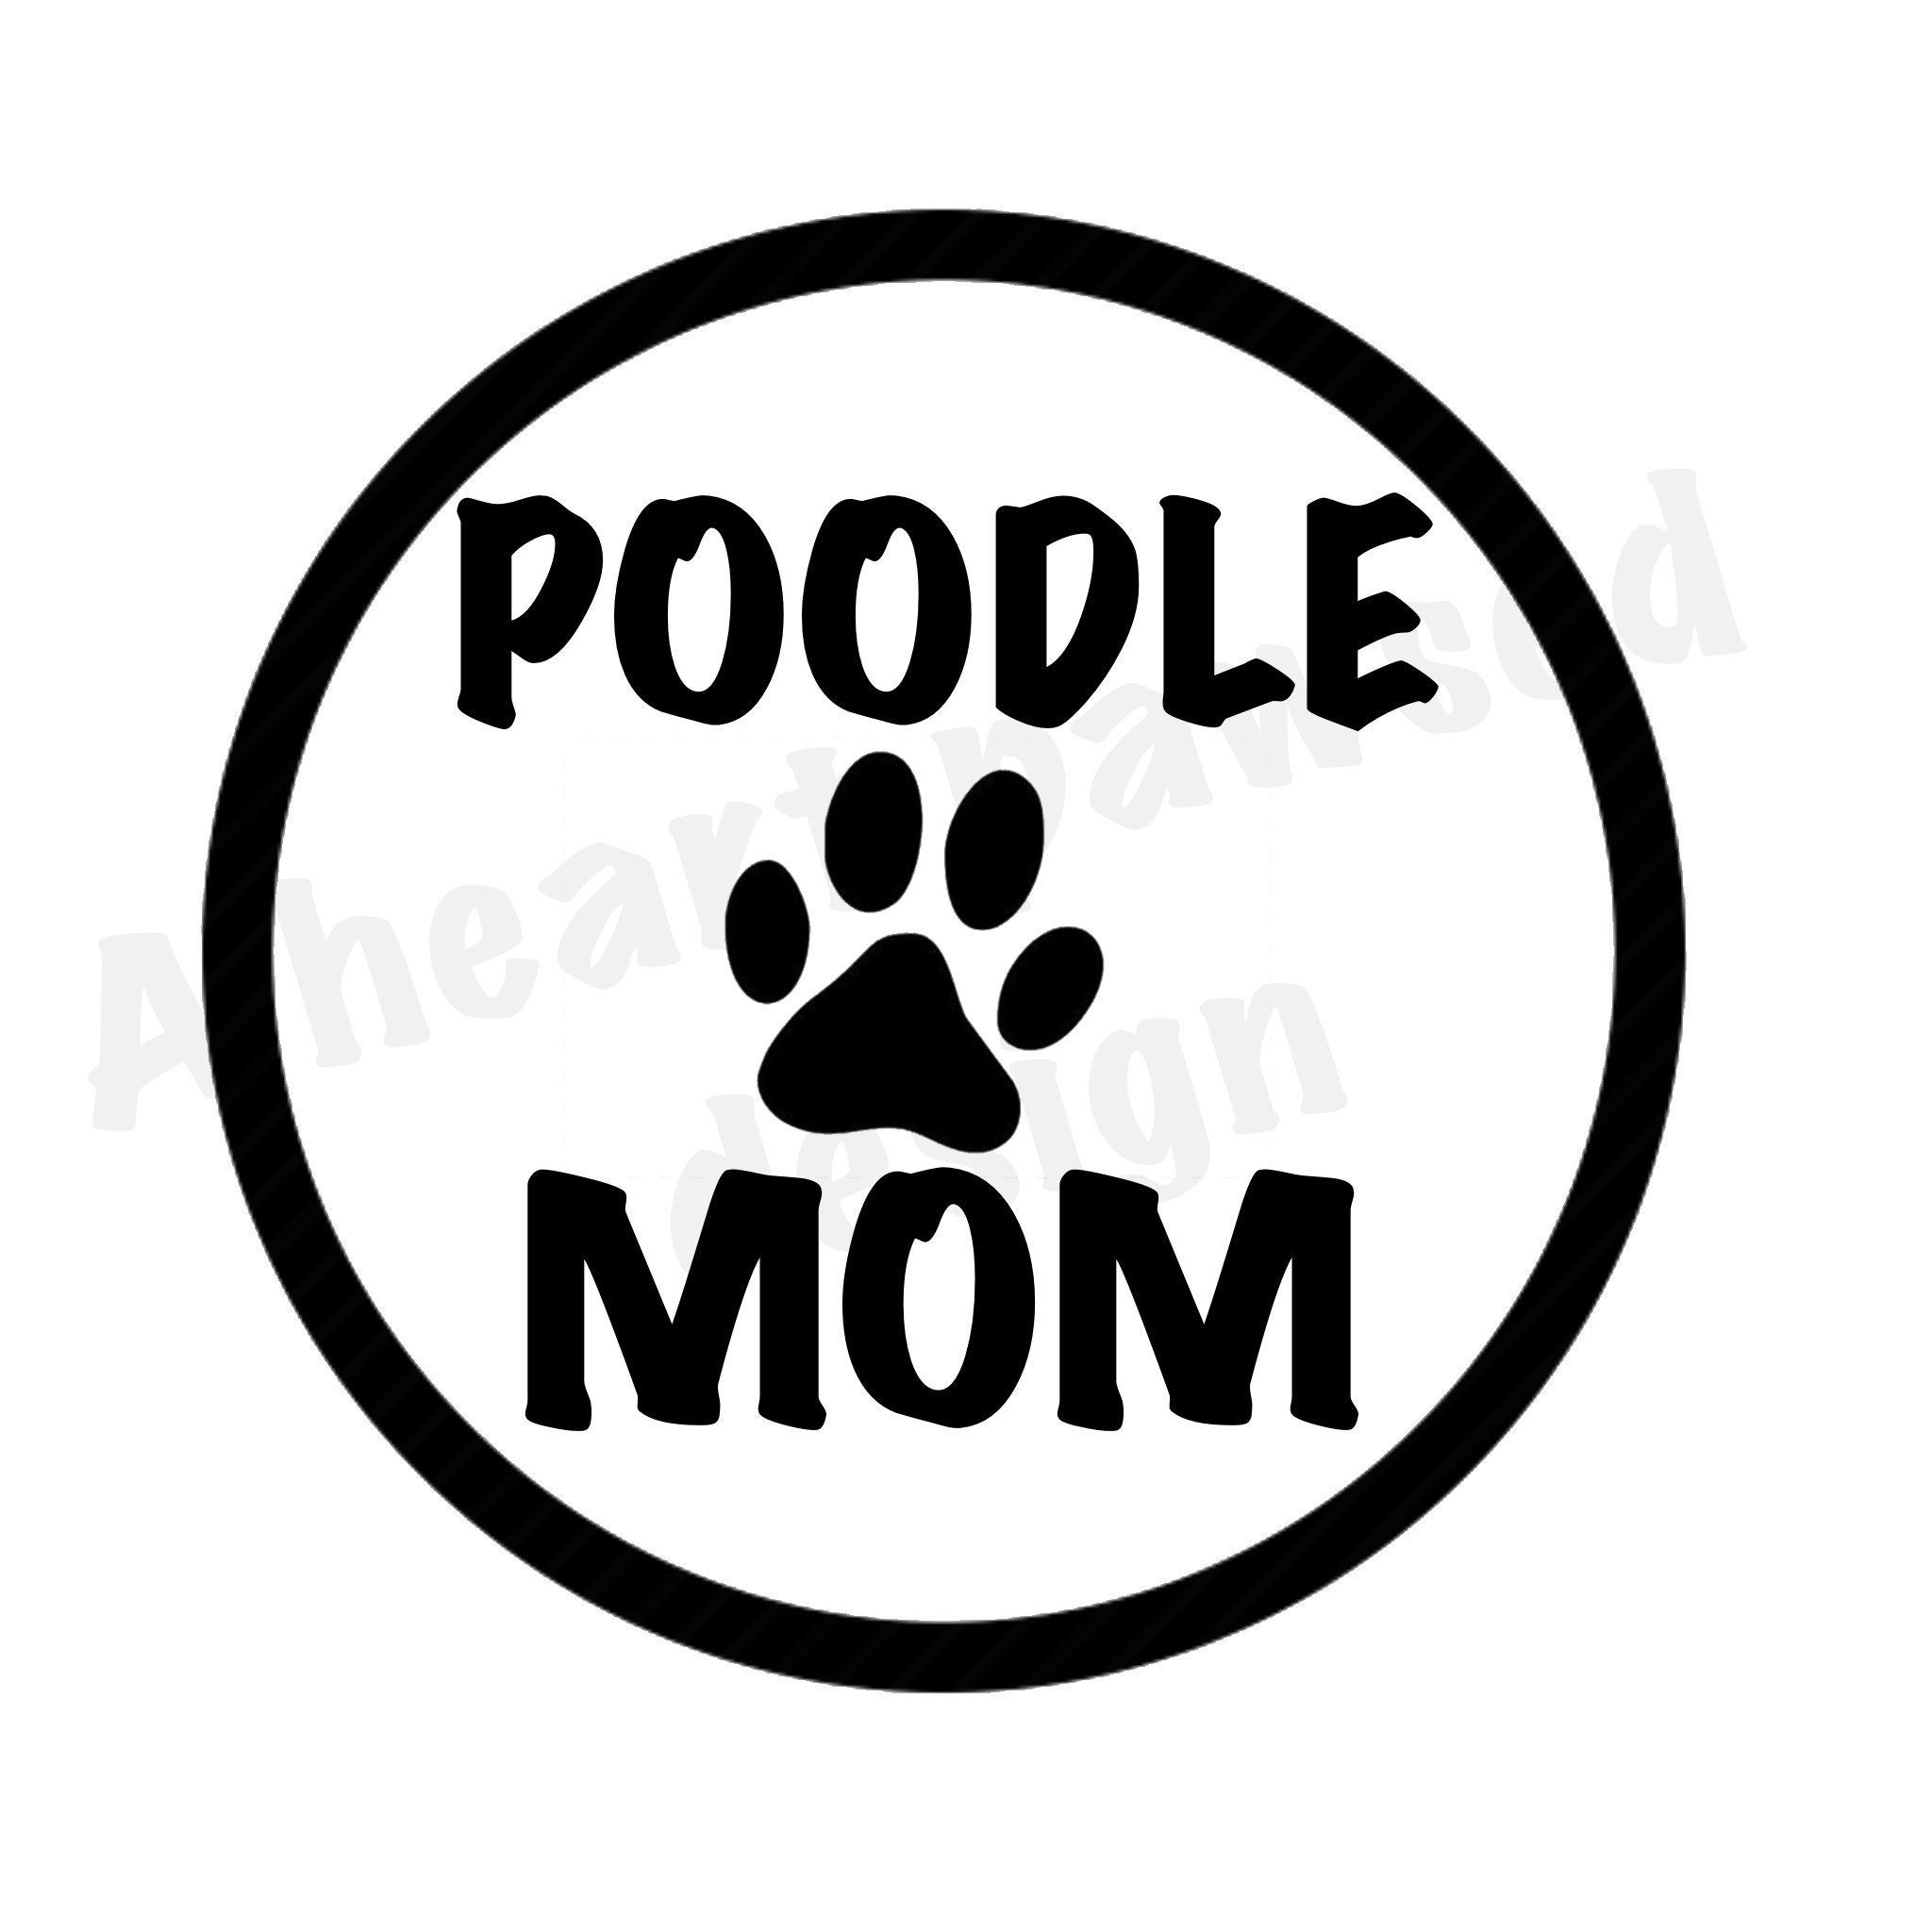 Poodle Mom SVG Cut Image - Etsy